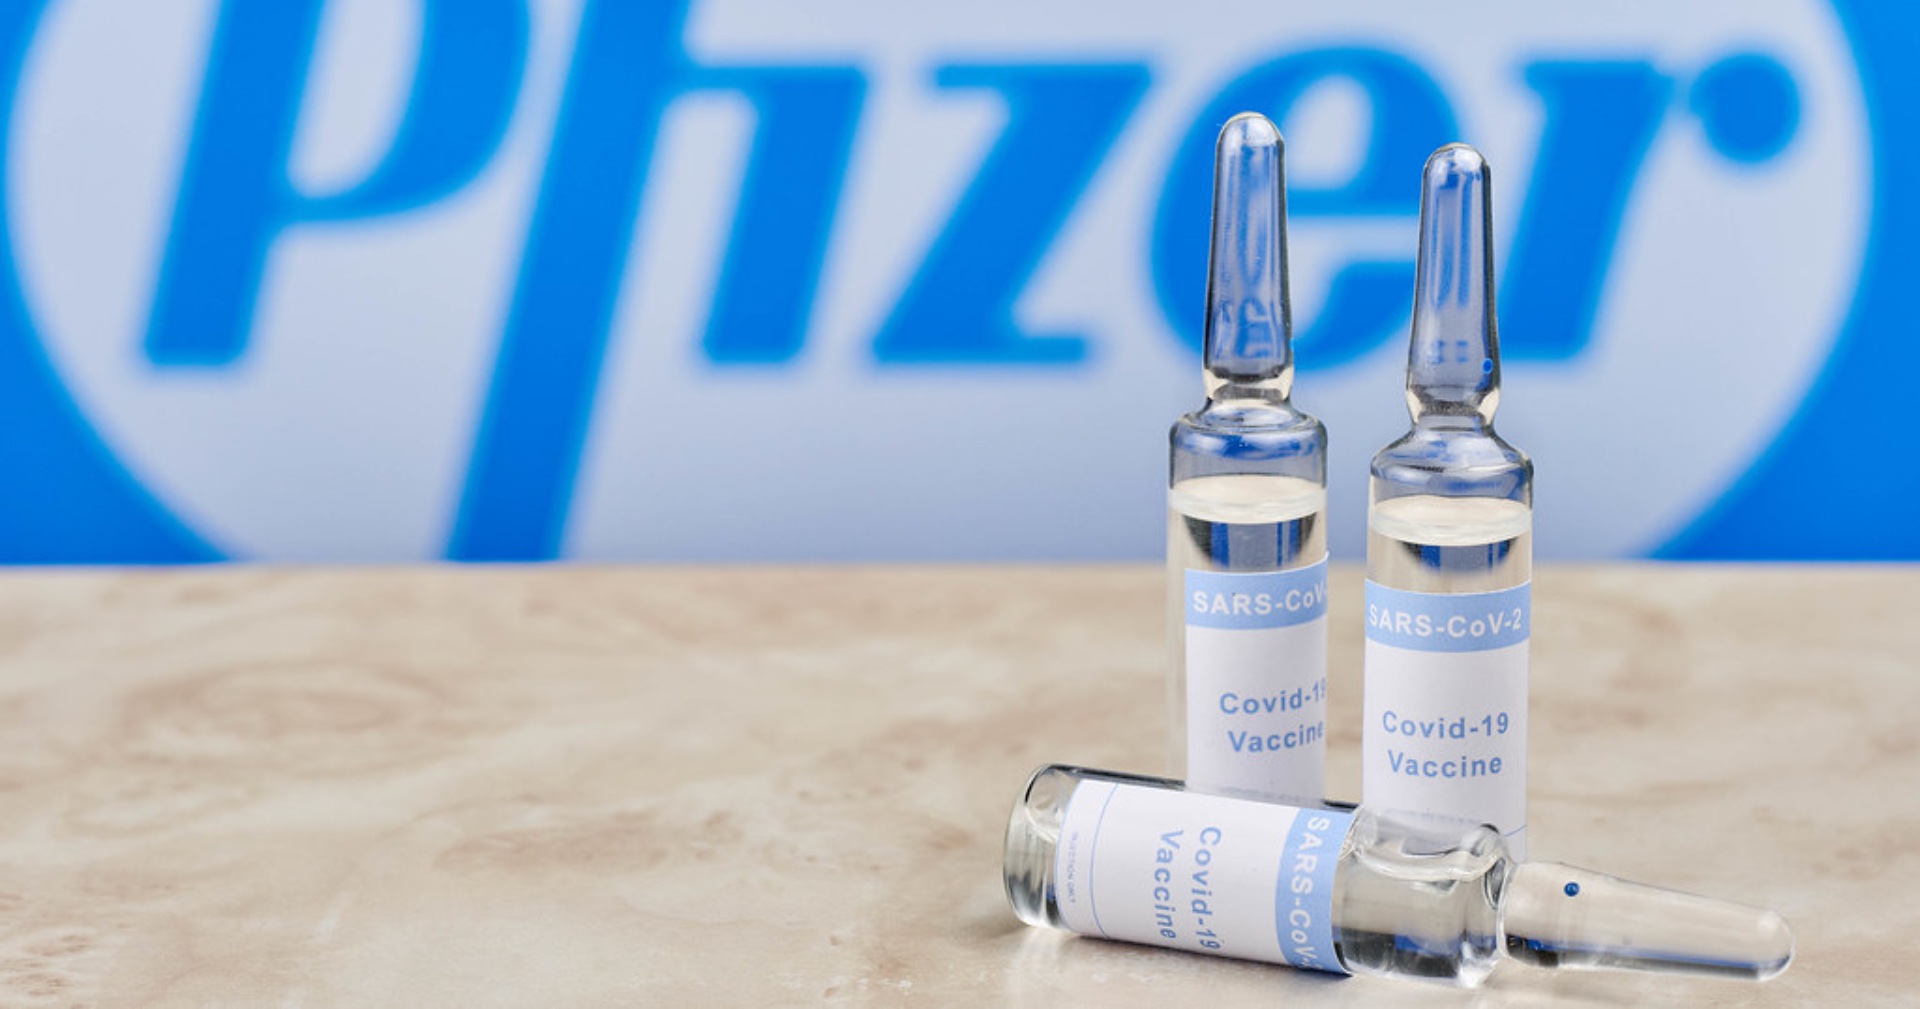 ประสิทธิภาพวัคซีนโควิด-19 ของ Pfizer/BioNTech จะลดลงหลังจาก 6 เดือน